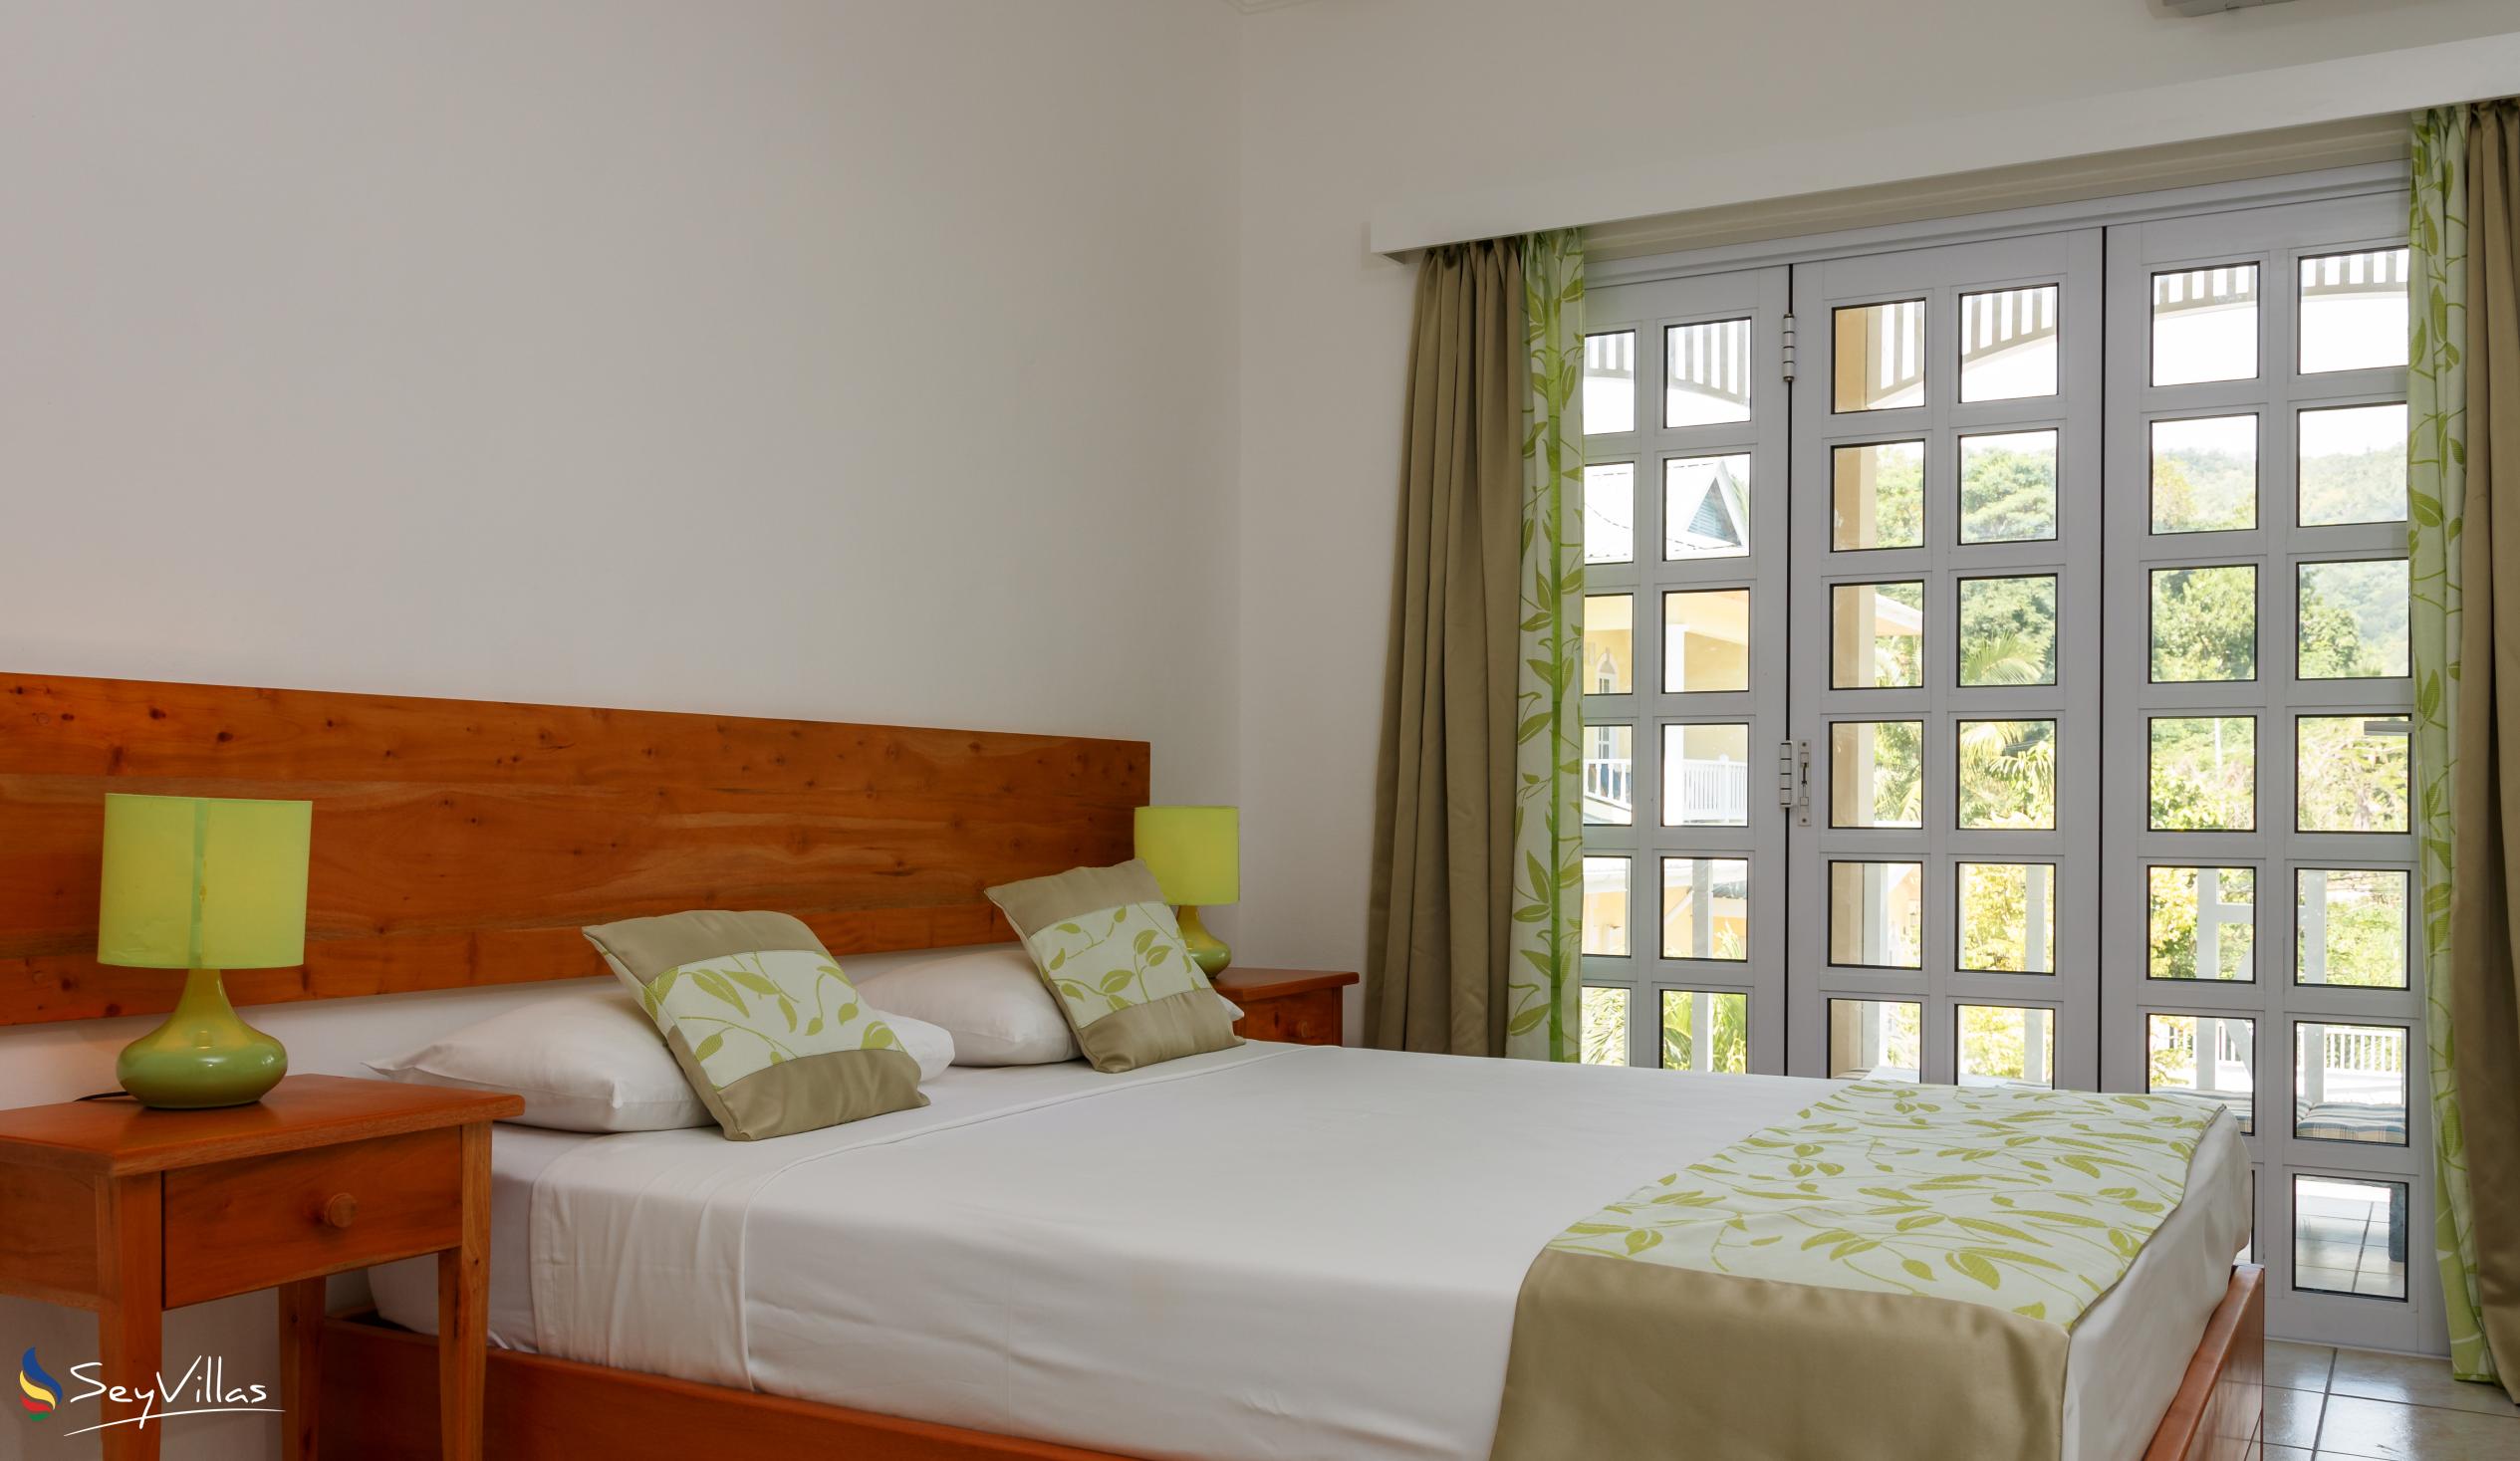 Photo 120: Captain's Villa - 2-Bedroom Suite - Mahé (Seychelles)